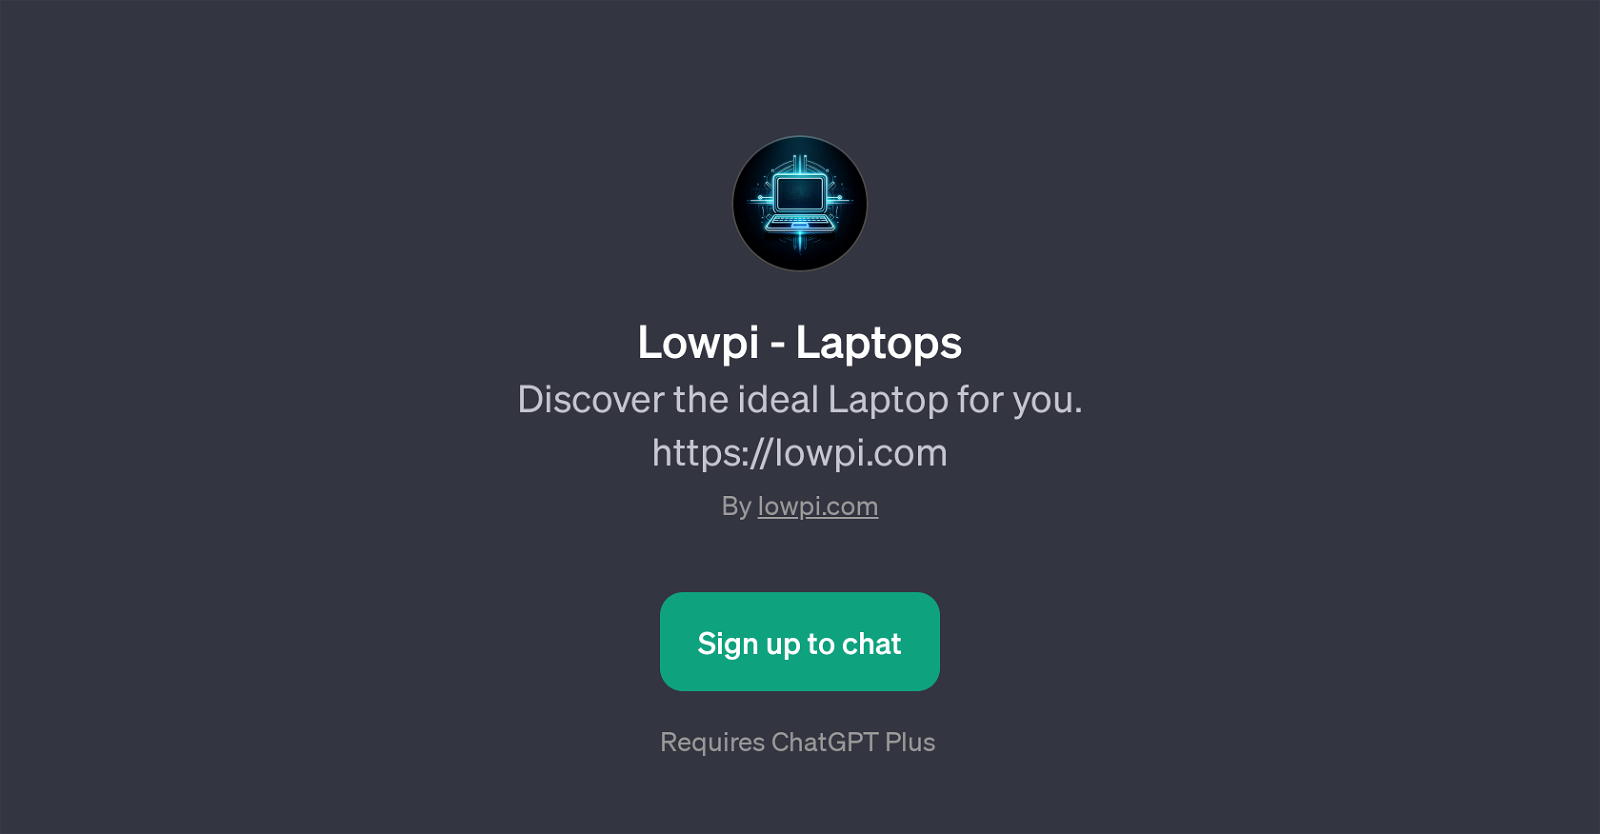 Lowpi - Laptops website